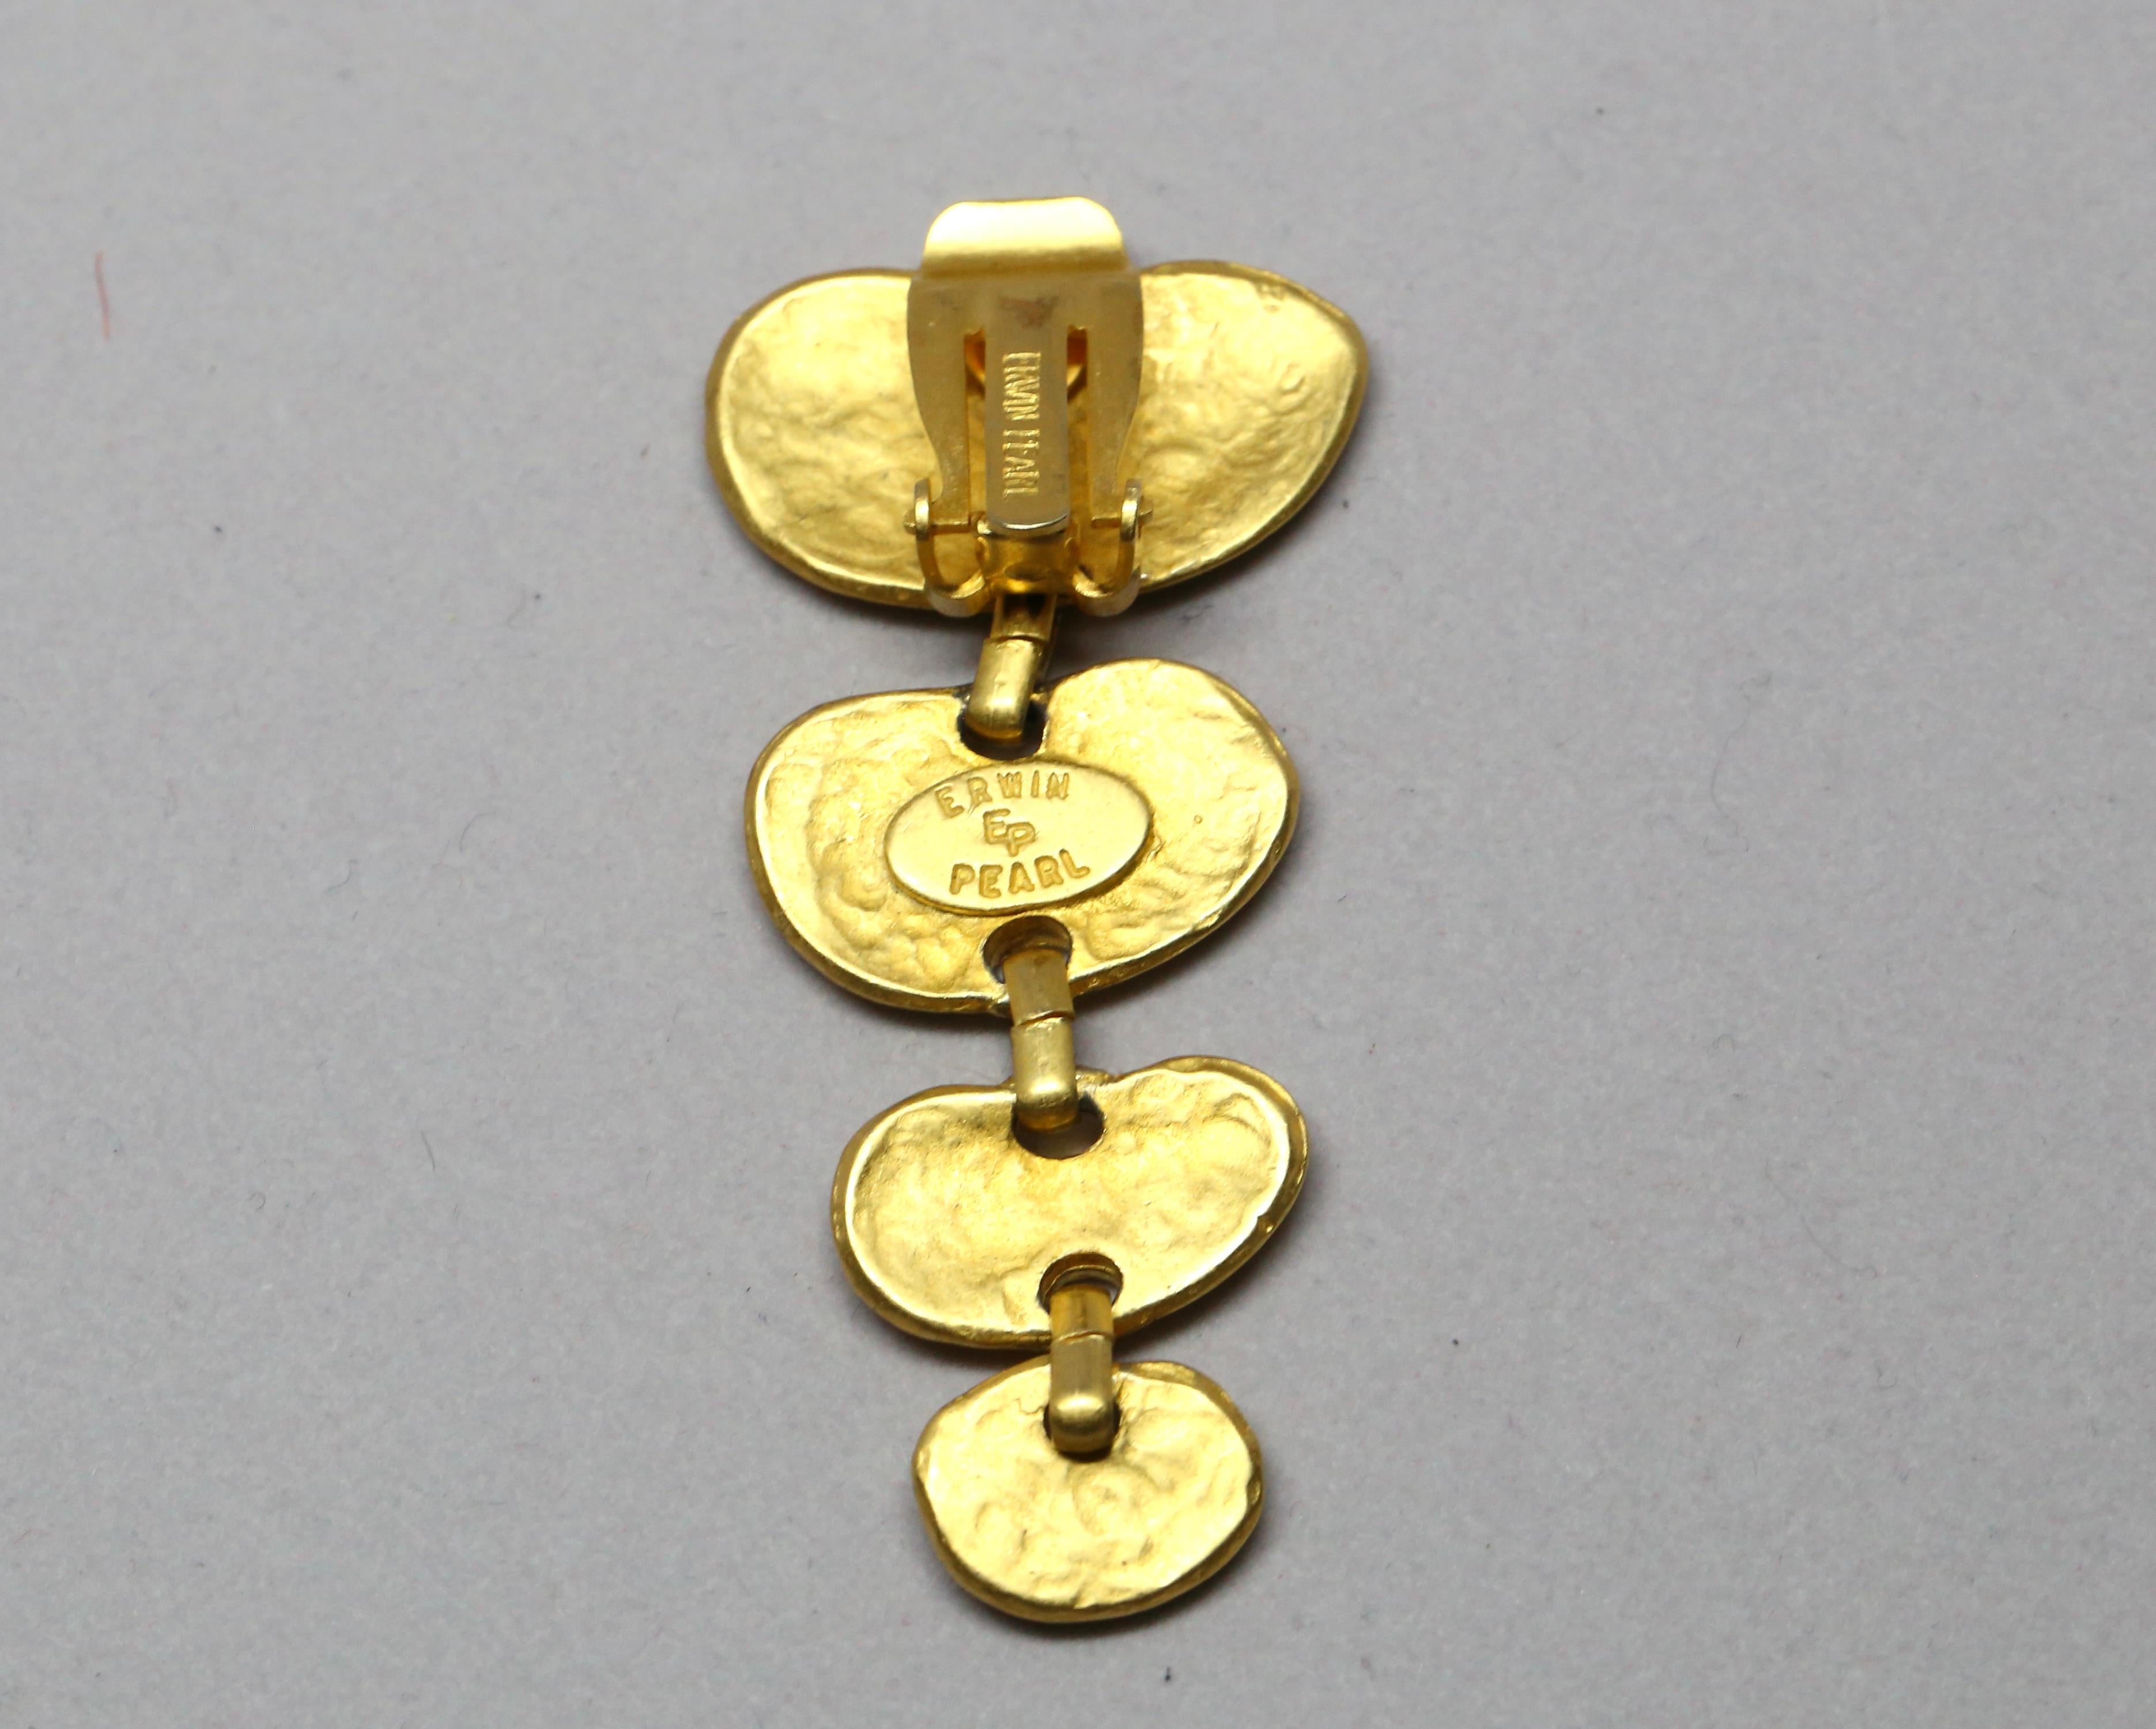 Boucles d'oreilles pendantes en or mat, de forme organique, d'Erwin Pearl, datant des années 1980. Dos à pince. Mesures approximatives : un peu moins de 2,5